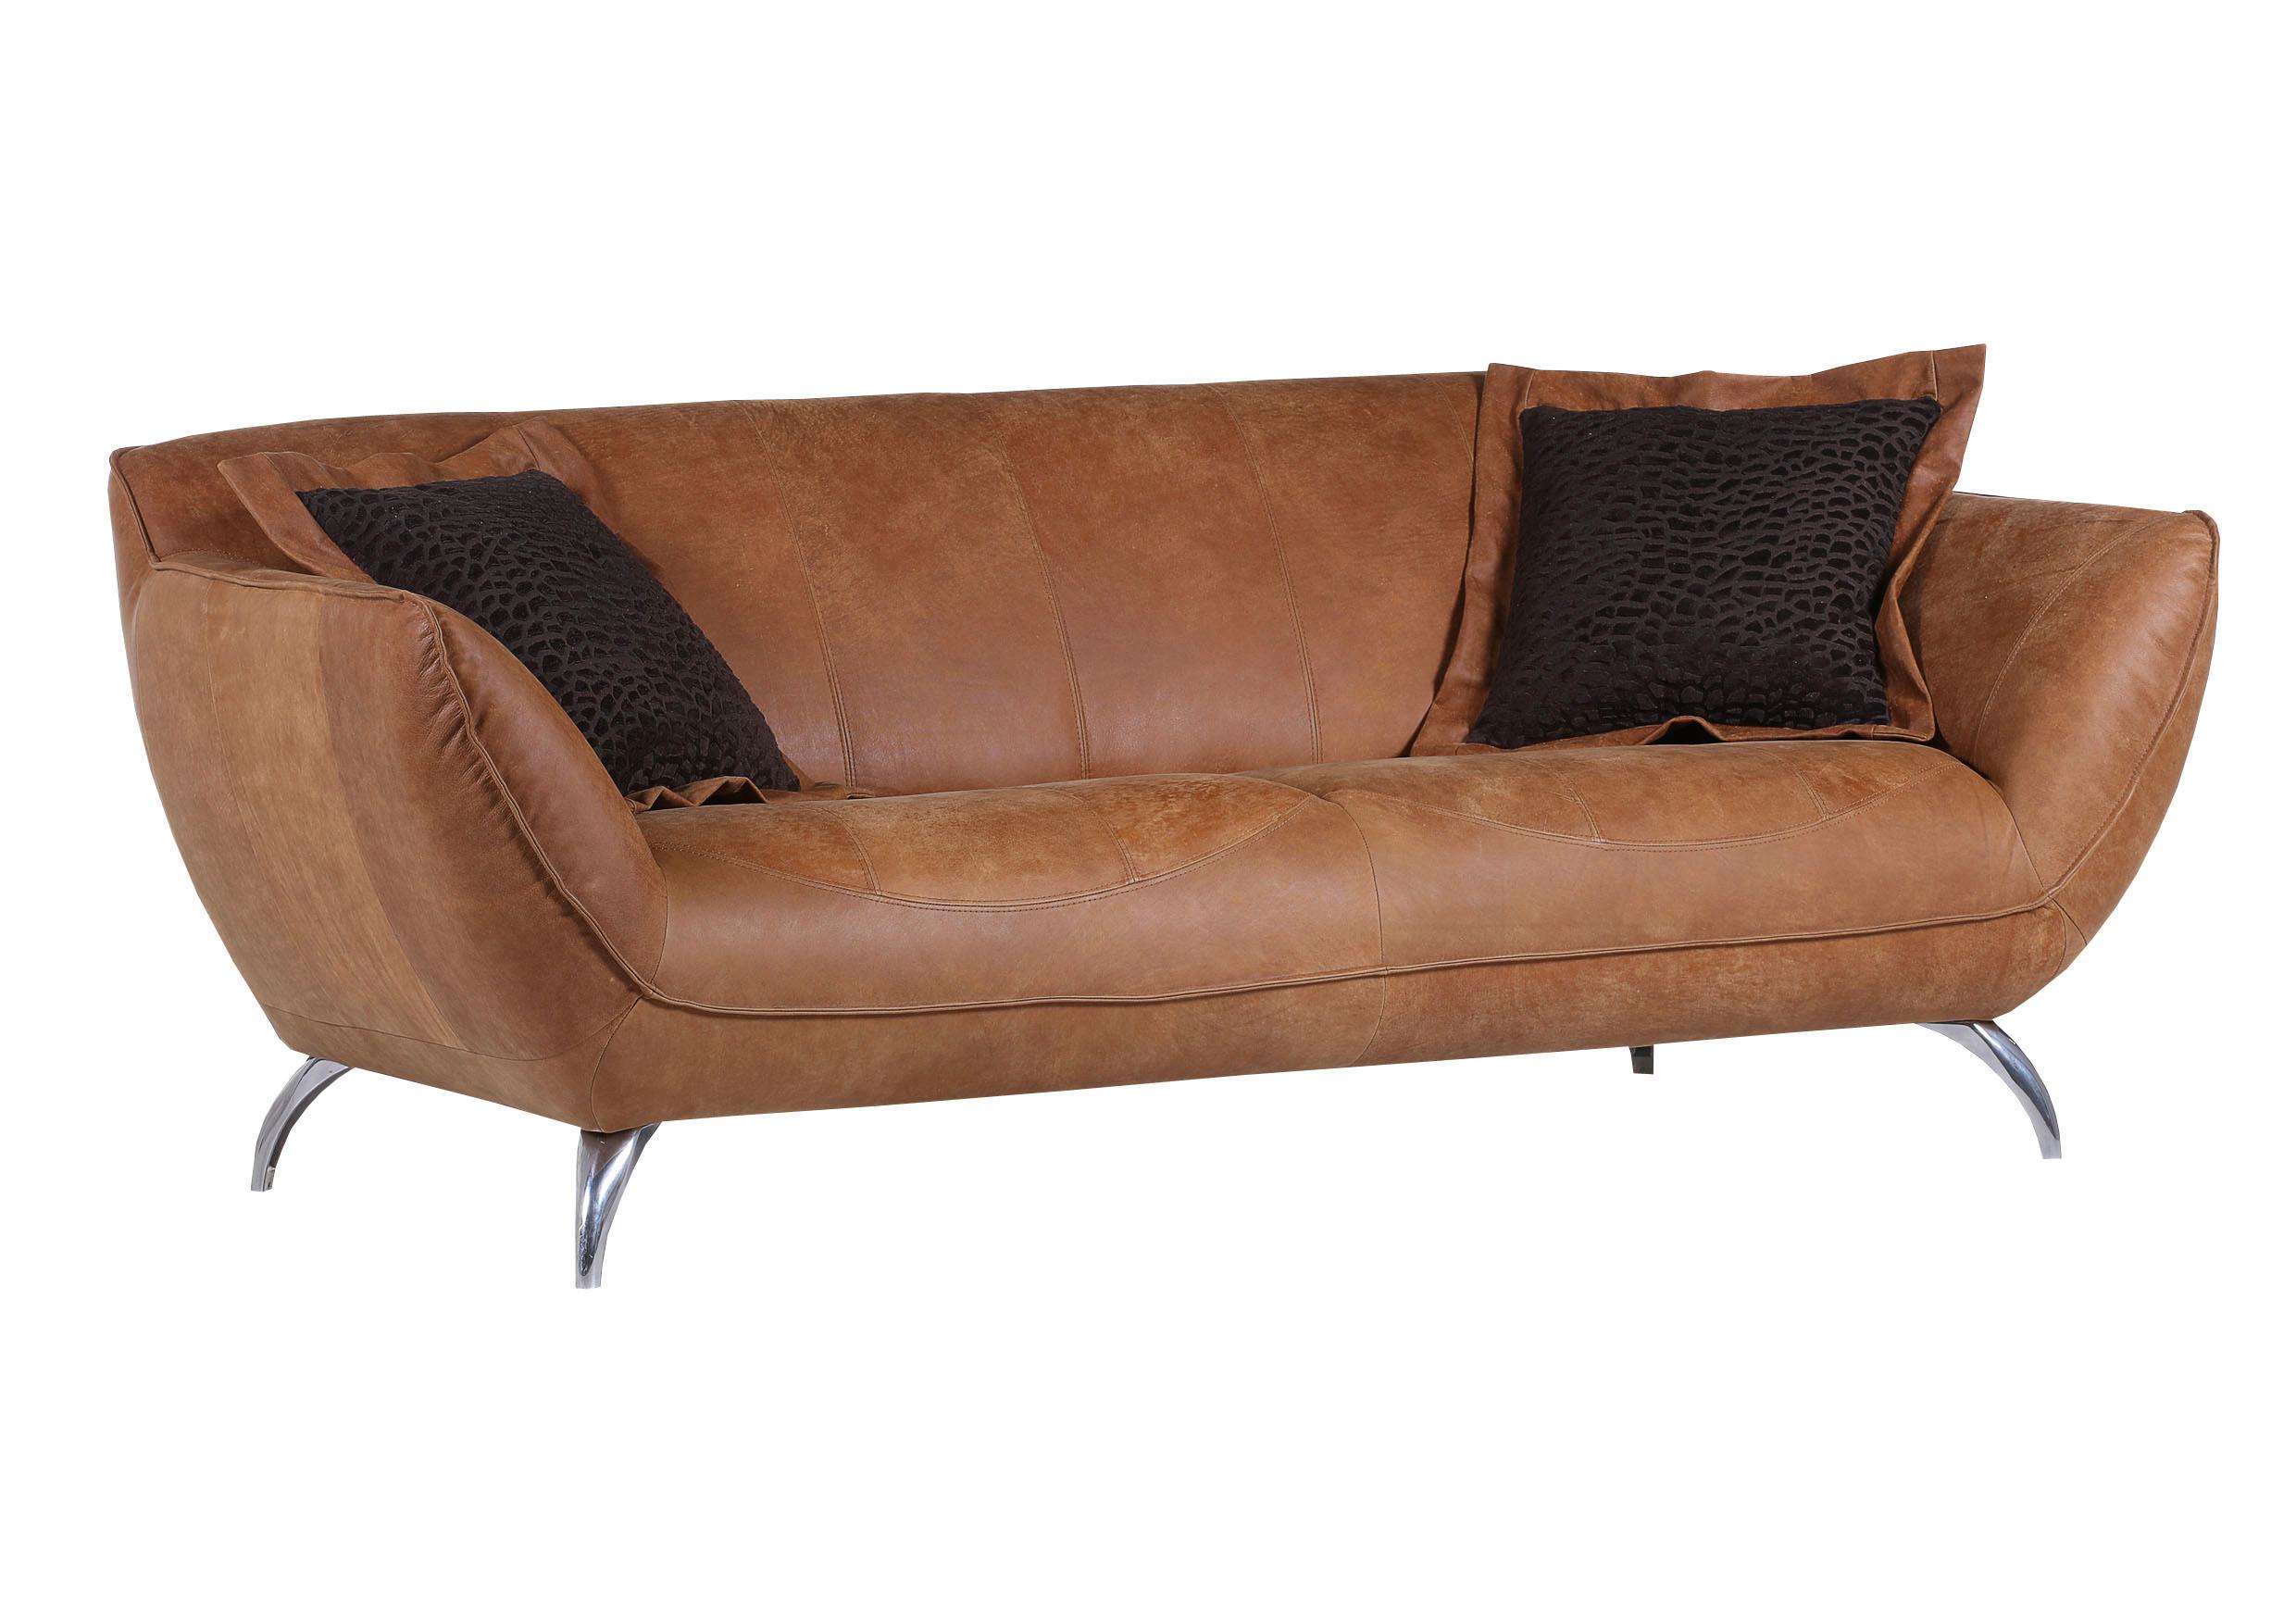 Zweisitzer-Sofa aus Echtleder - Hellbraun/Alufarben, Lifestyle, Leder (205/83/45/100cm) - Premium Living